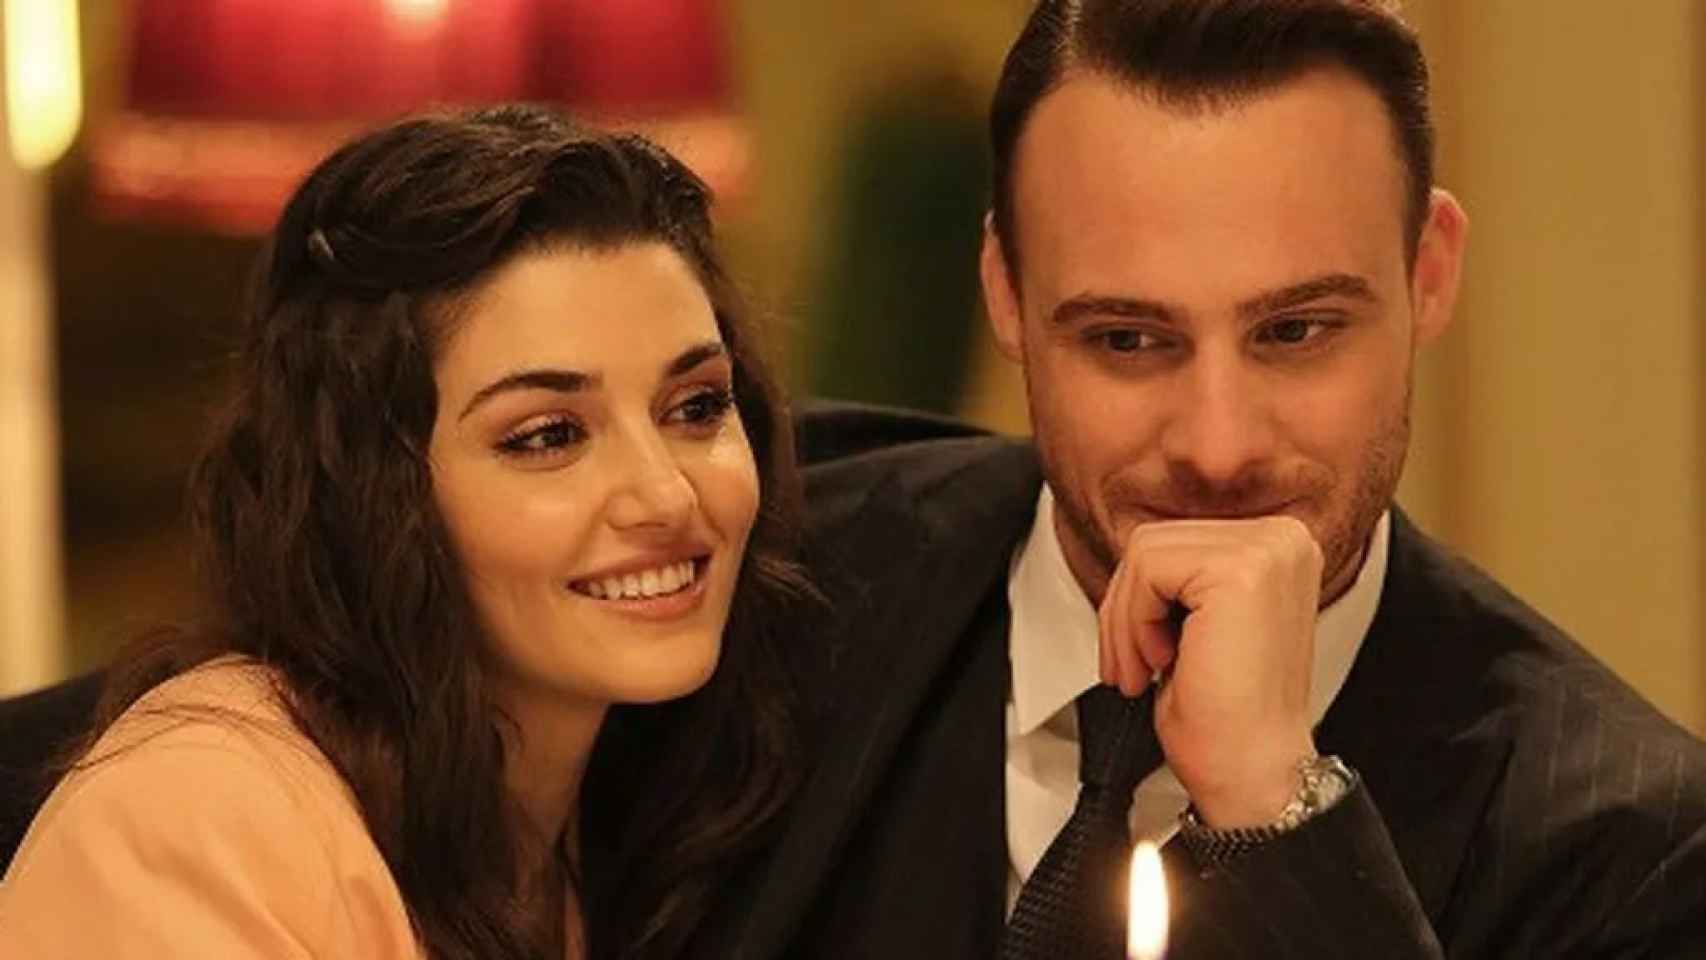 Hande Erçel y Kerem Bürsin son Eda y Serkan en 'Love is in the air'.